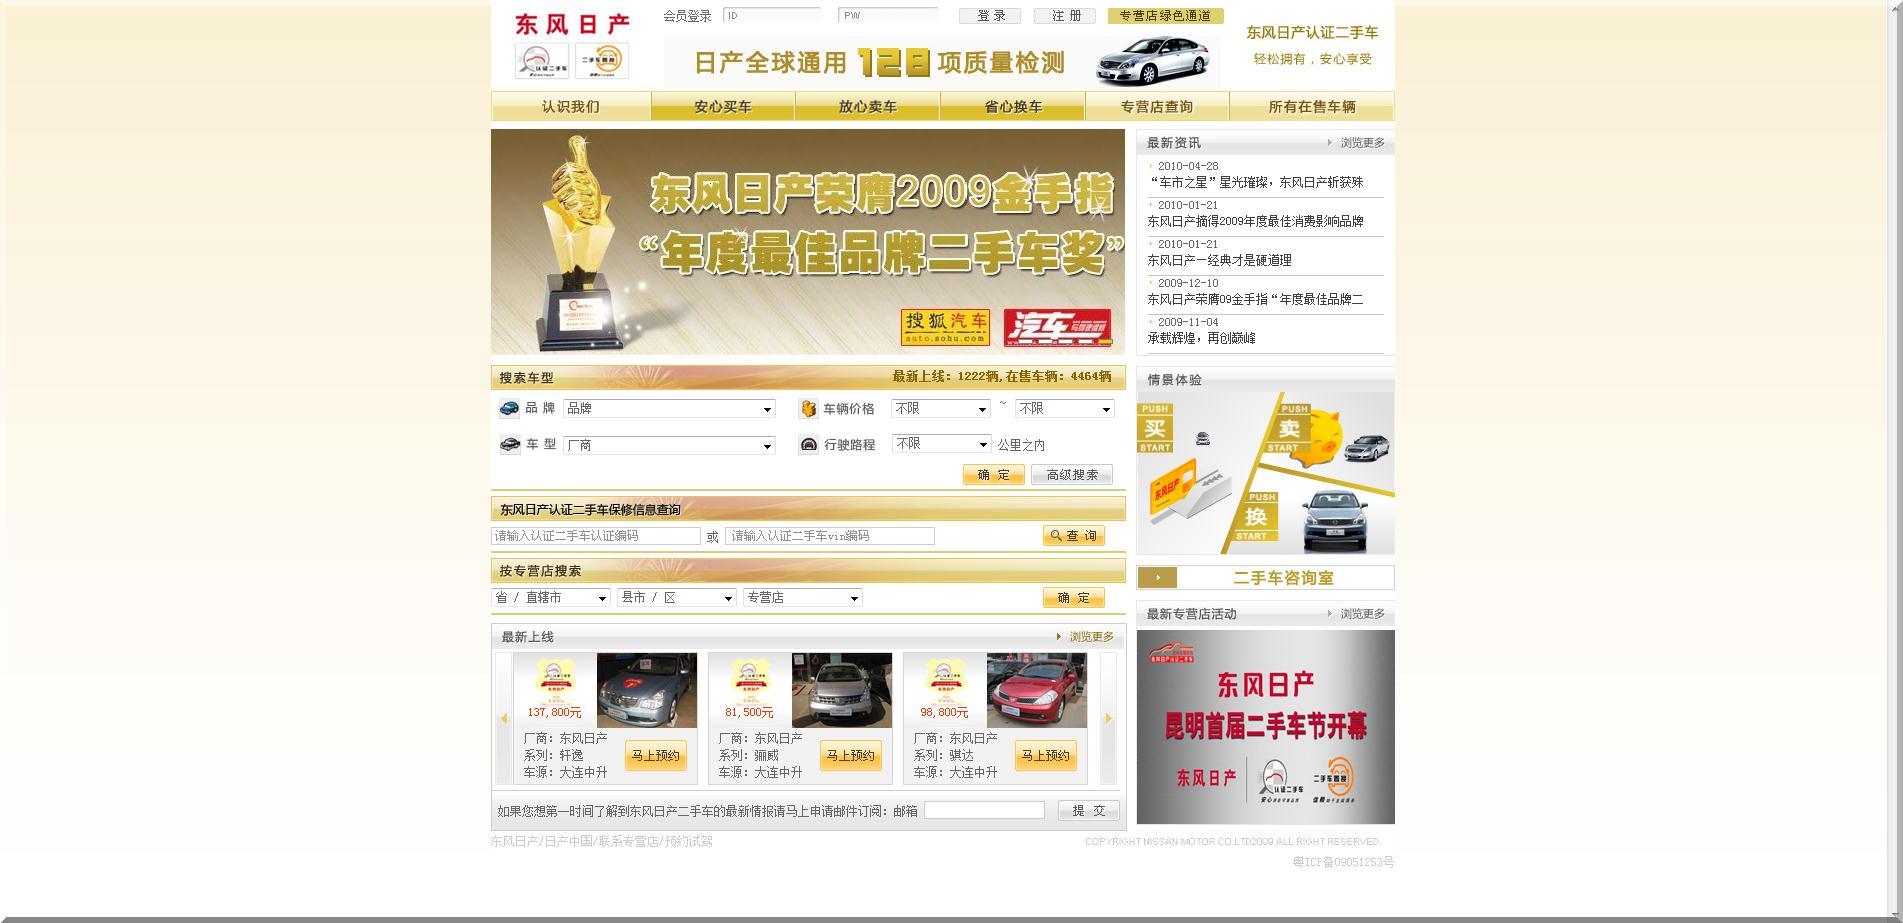 东风日产,二手车交易信息网,北京二手车网,广州 上海二手车市场,中国最大的品牌二手车网站